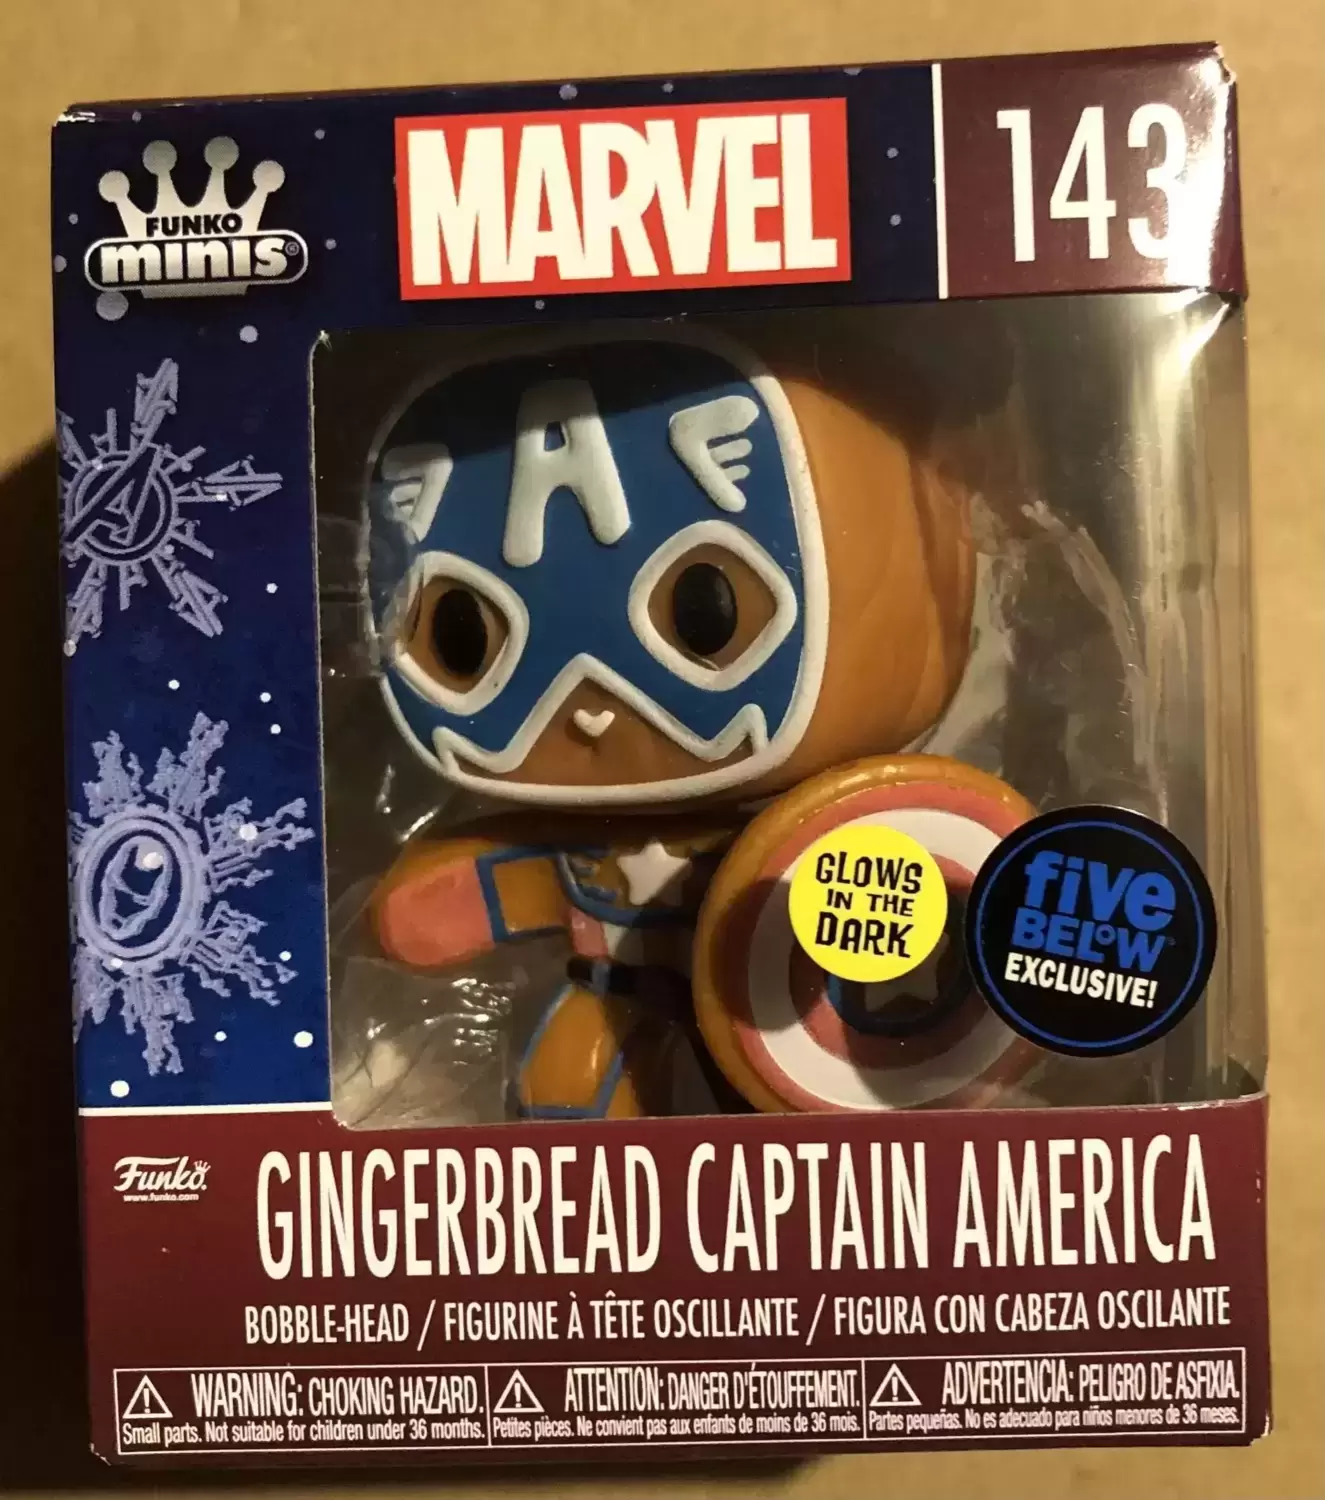 Funko Minis - Marvel - Gingerbread Captain America GITD